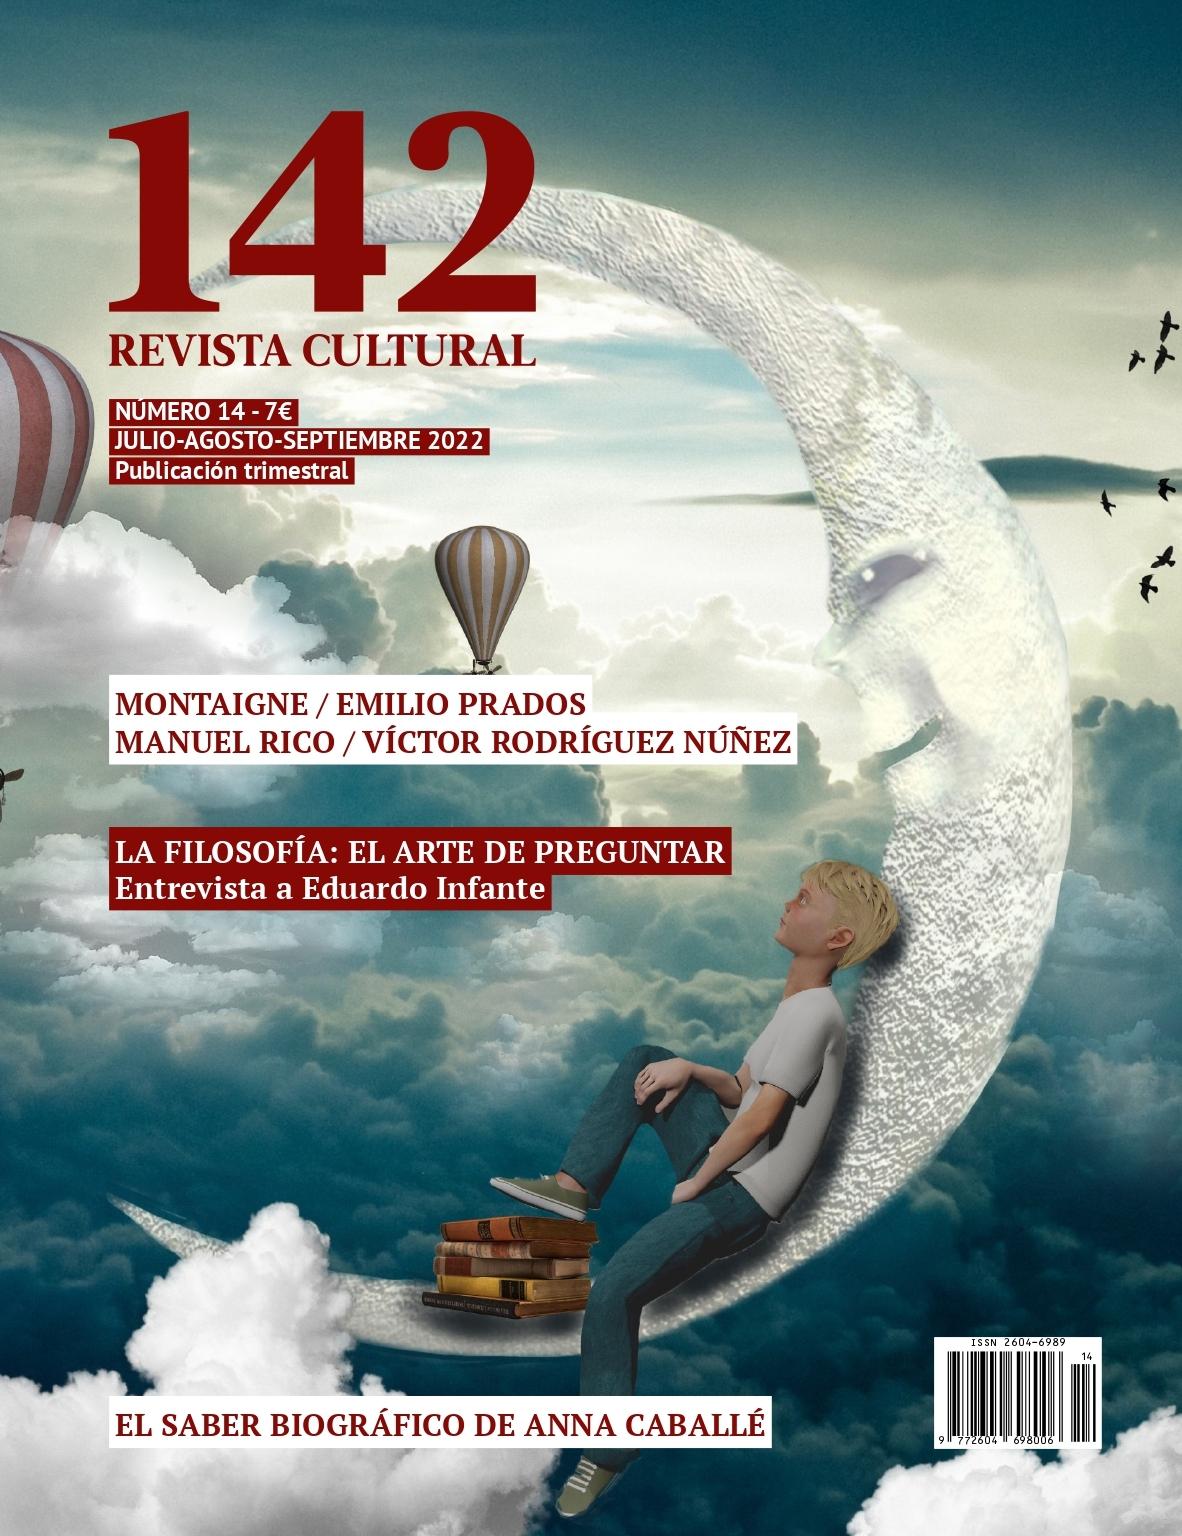 142 Revista cultral nº 14 "Julio-agosto-septiembre 2022. La filosofia el arte de preguntar"